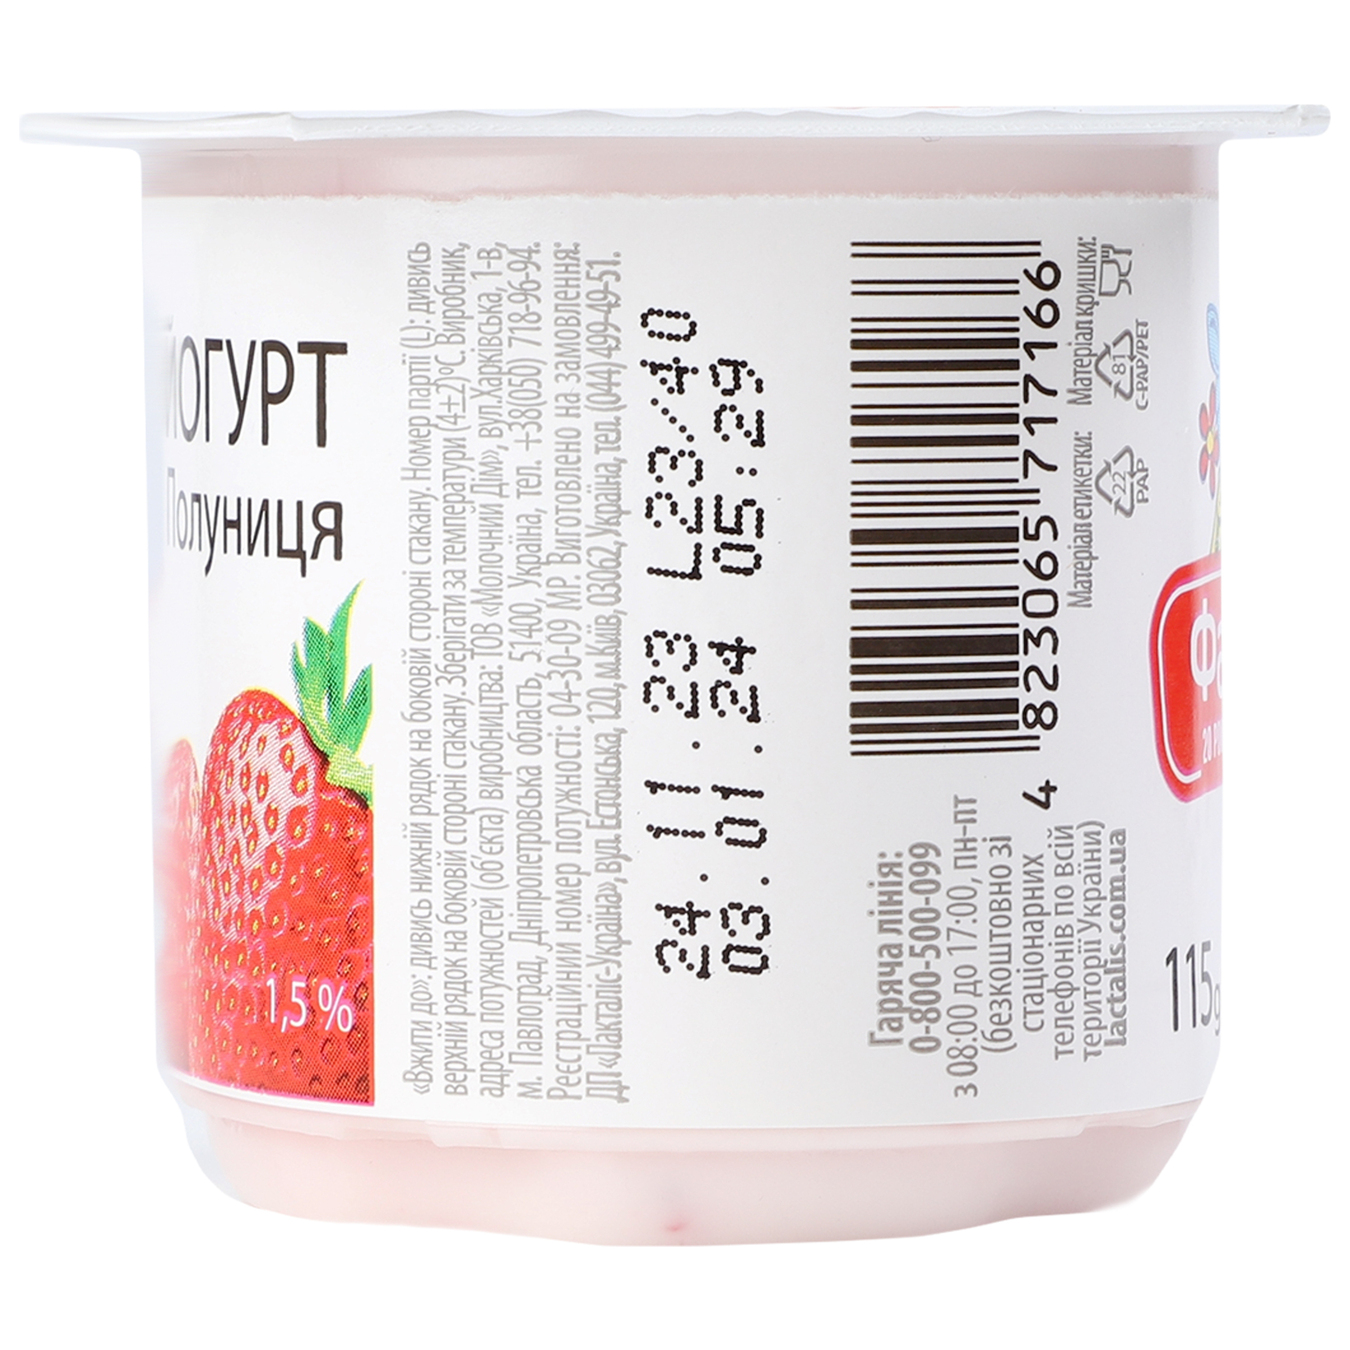 Йогурт Фанни с наполнителем клубника стаканчик 1,5% 115г 4